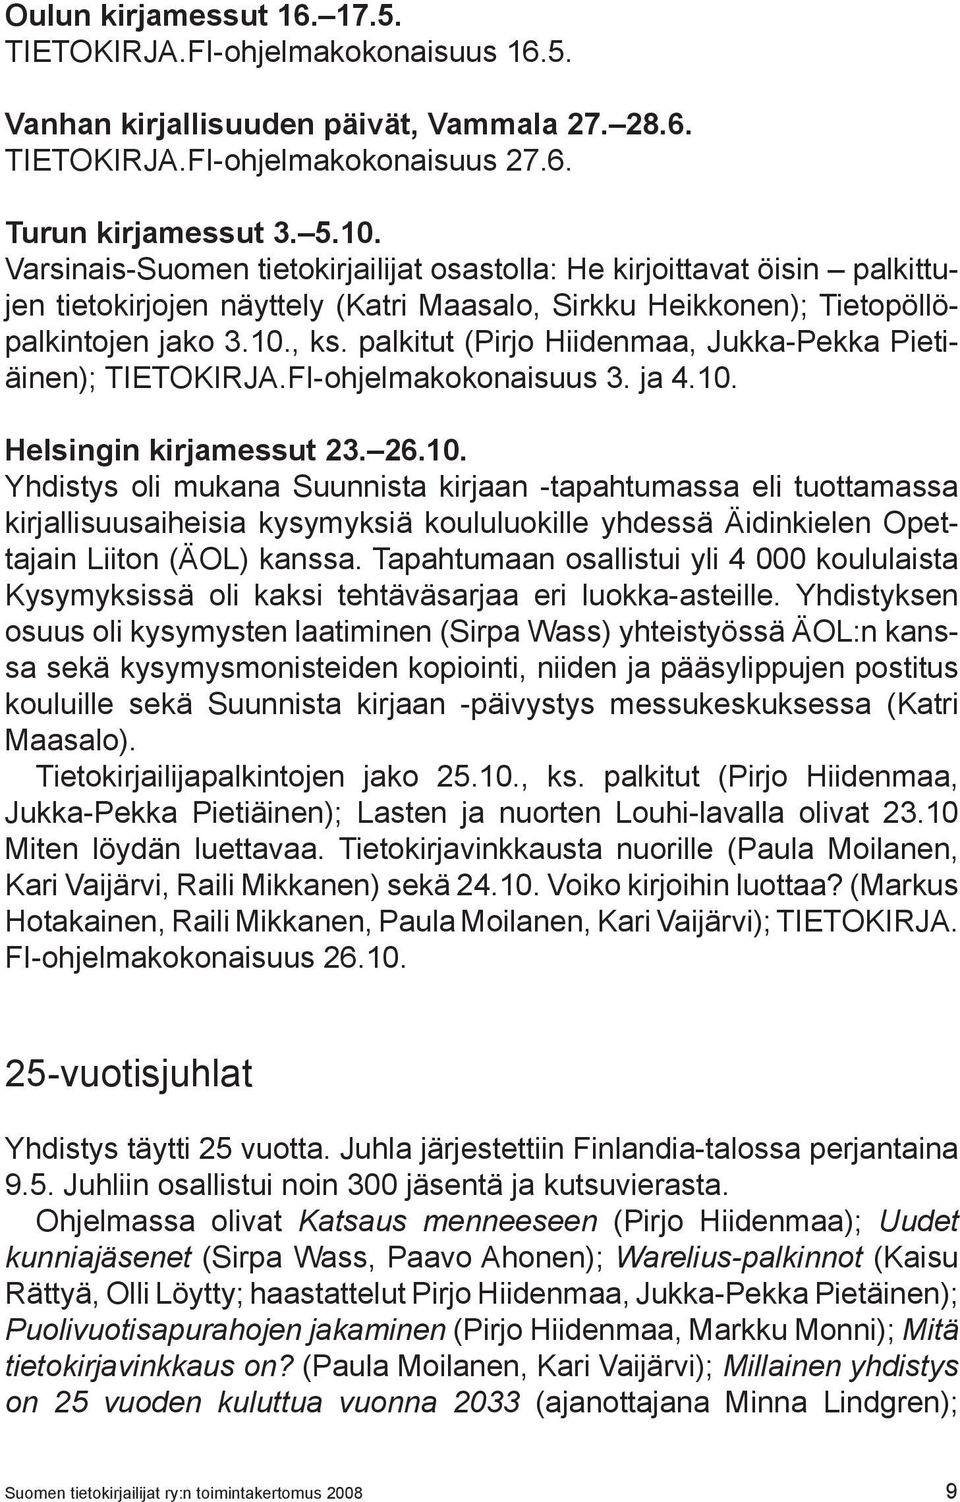 palkitut (Pirjo Hiidenmaa, Jukka-Pekka Pietiäinen); TIETOKIRJA.FI-ohjelmakokonaisuus 3. ja 4.10.